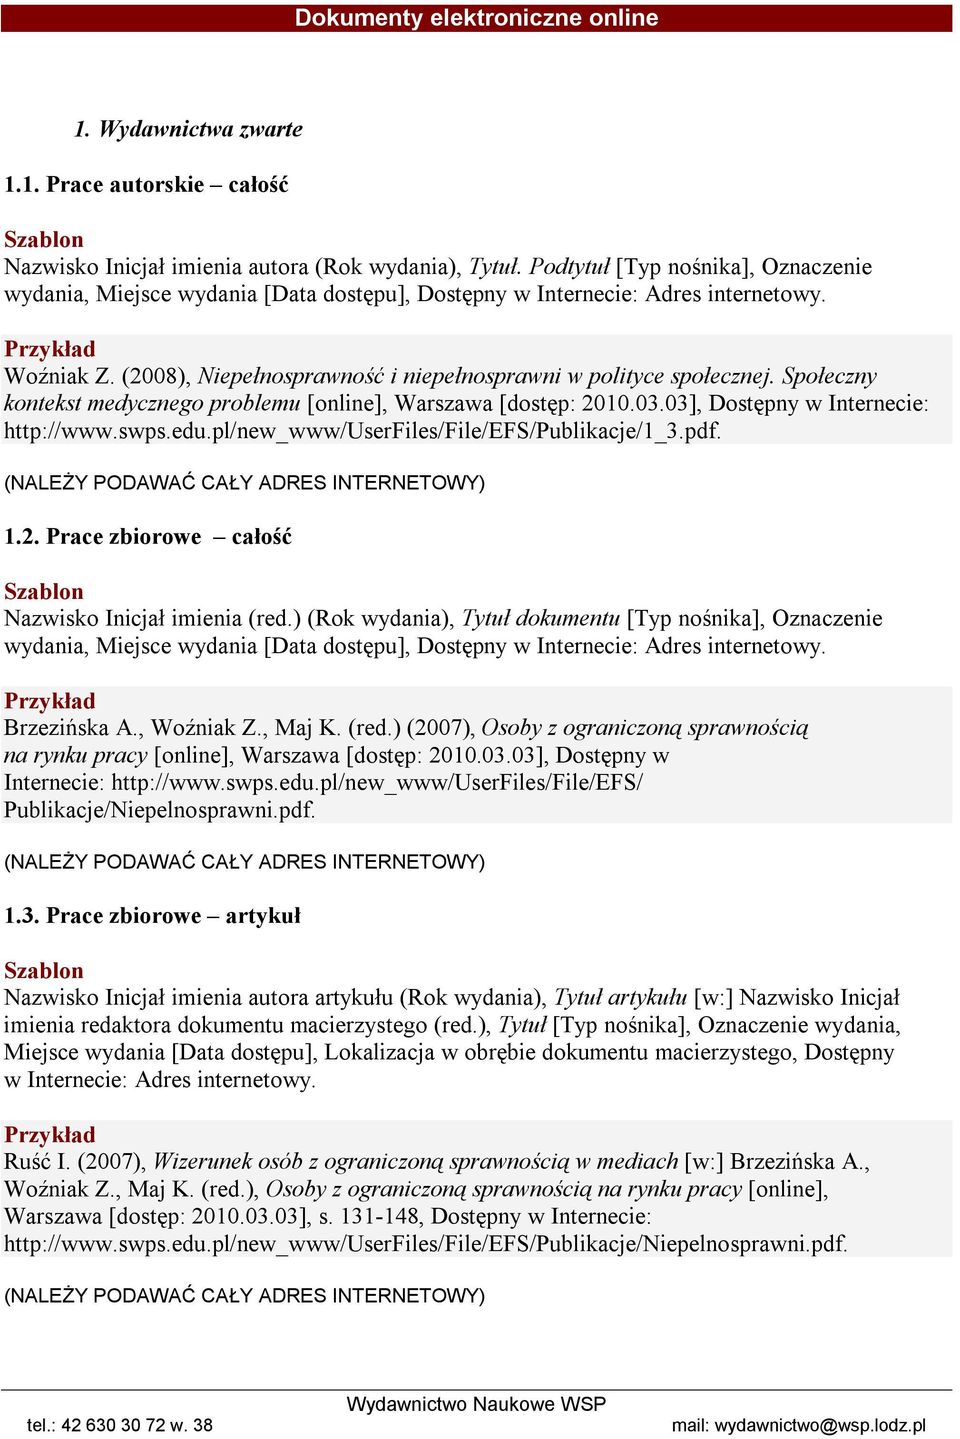 Społeczny kontekst medycznego problemu [online], Warszawa [dostęp: 2010.03.03], Dostępny w Internecie: http://www.swps.edu.pl/new_www/userfiles/file/efs/publikacje/1_3.pdf.